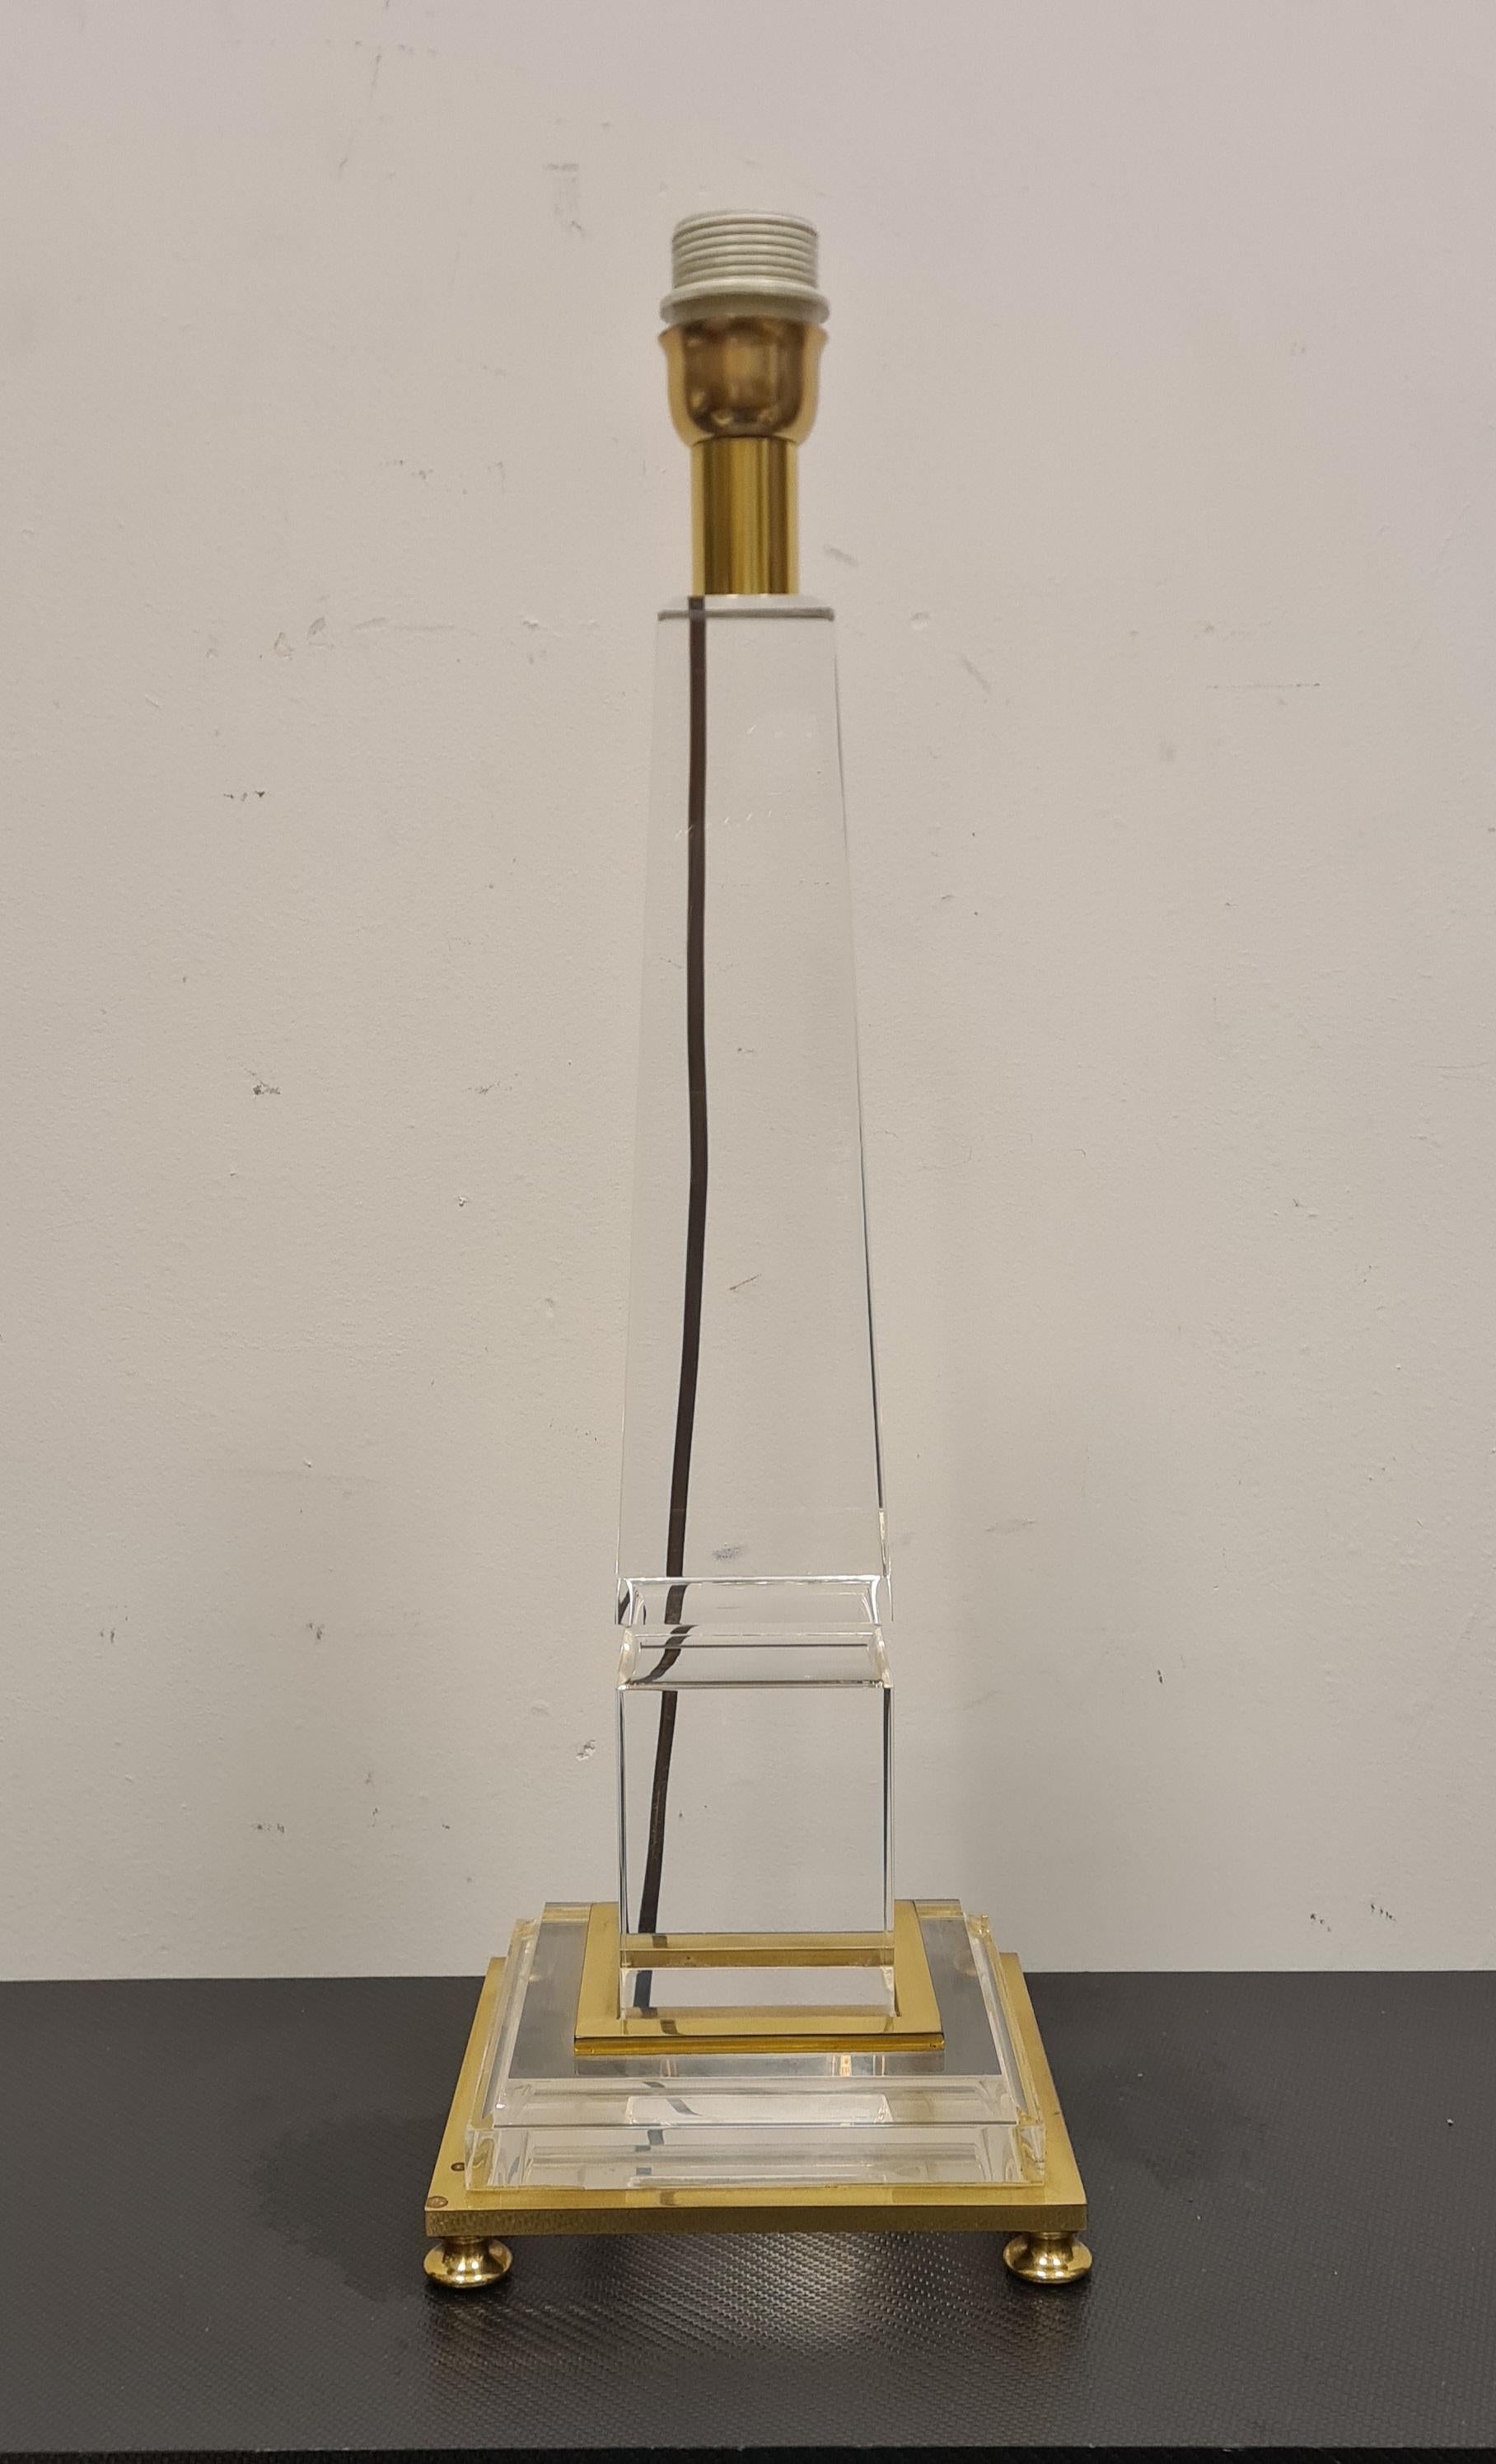 Lampe de table avec base en forme d'obélisque conçue par Sandro Petti.

Lampe raffinée en forme d'obélisque en méthacrylate et laiton avec abat-jour en tissu.

Elégante et discrète, cette lampe, dans le style Hollywood Regency typique des années